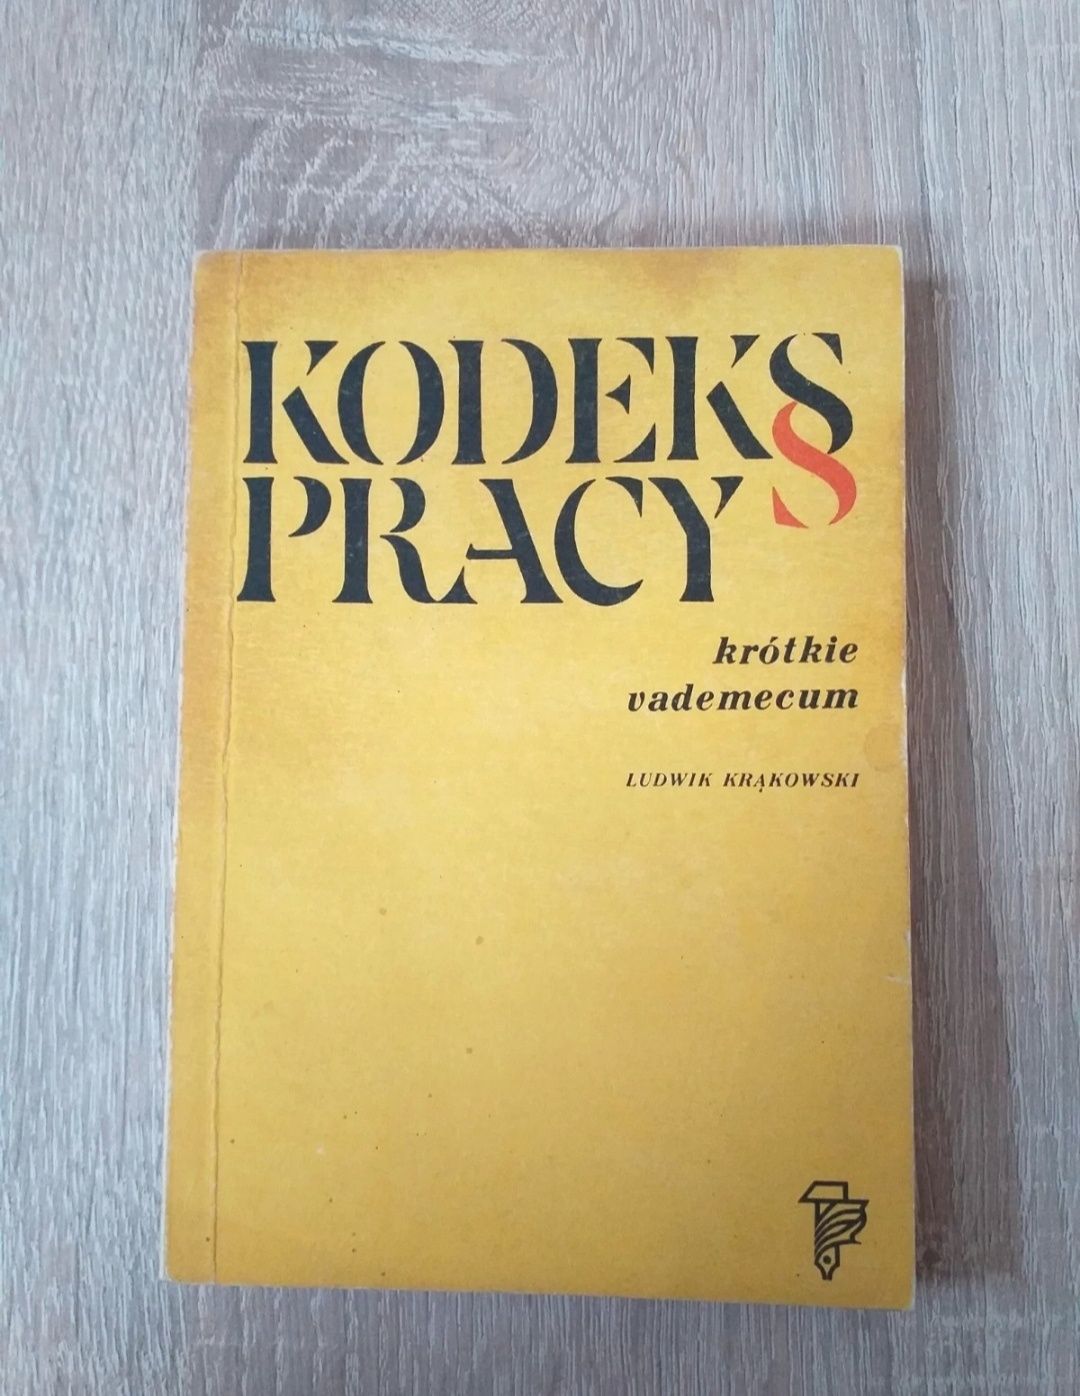 Książka z 1975 r "Kodeks pracy" Kąkolewski